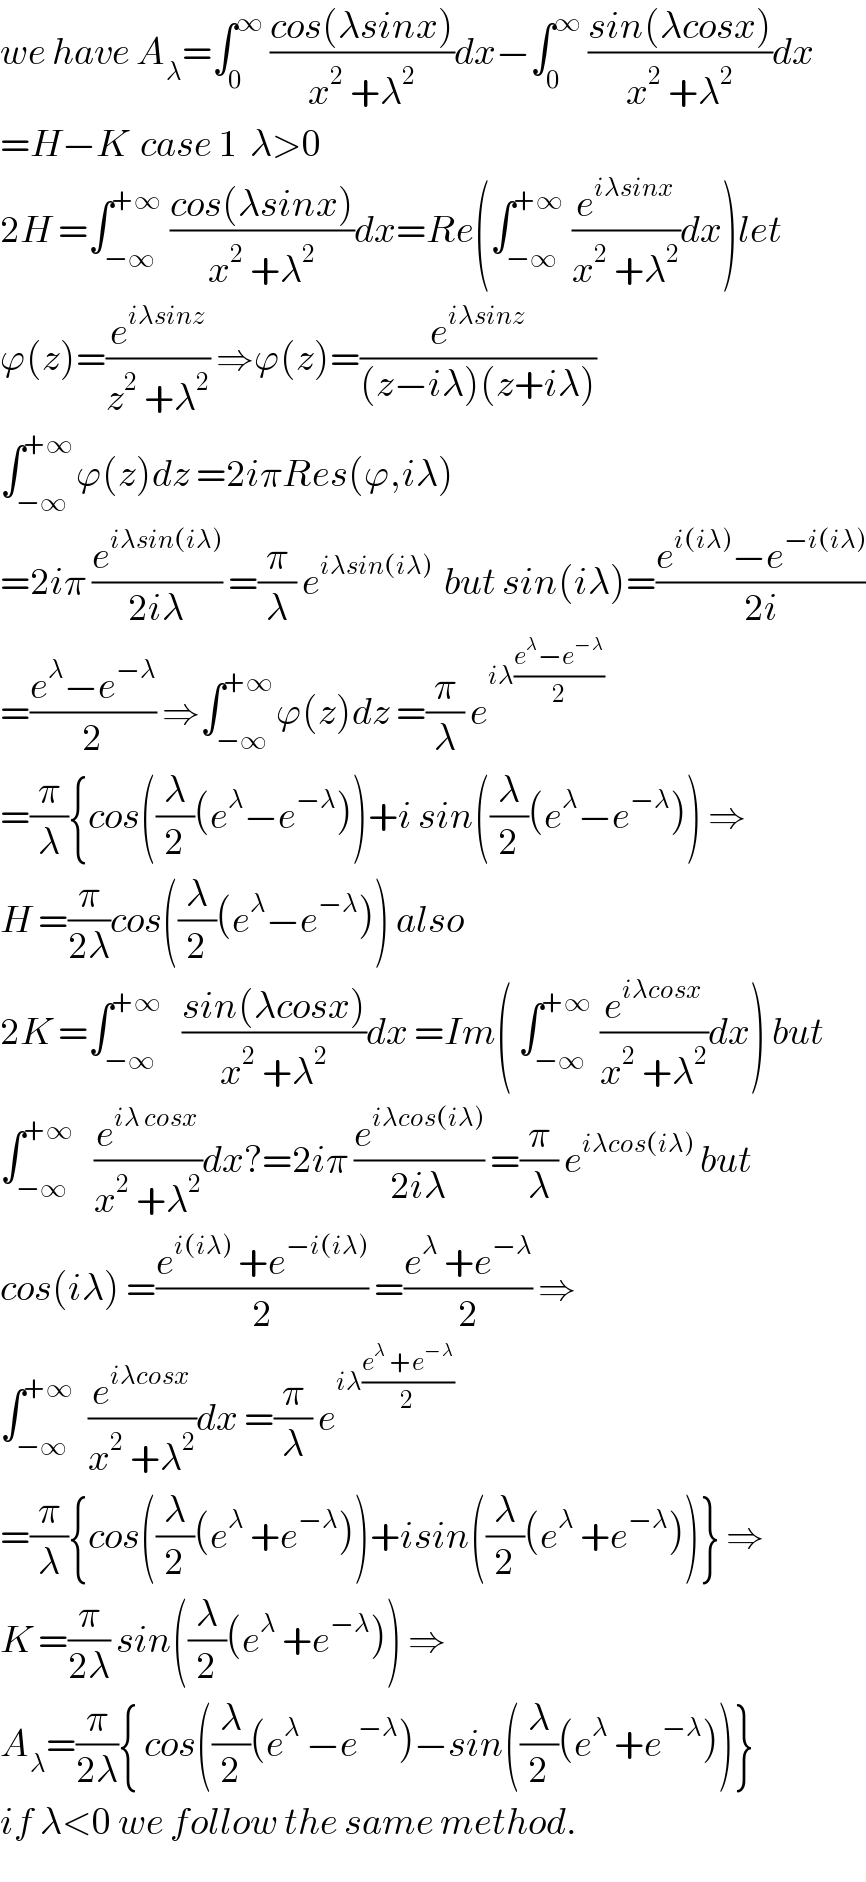 we have A_λ =∫_0 ^∞  ((cos(λsinx))/(x^2  +λ^2 ))dx−∫_0 ^∞  ((sin(λcosx))/(x^2  +λ^2 ))dx  =H−K  case 1  λ>0  2H =∫_(−∞) ^(+∞)  ((cos(λsinx))/(x^2  +λ^2 ))dx=Re(∫_(−∞) ^(+∞)  (e^(iλsinx) /(x^2  +λ^2 ))dx)let  ϕ(z)=(e^(iλsinz) /(z^2  +λ^2 )) ⇒ϕ(z)=(e^(iλsinz) /((z−iλ)(z+iλ)))  ∫_(−∞) ^(+∞) ϕ(z)dz =2iπRes(ϕ,iλ)  =2iπ (e^(iλsin(iλ)) /(2iλ)) =(π/λ) e^(iλsin(iλ))   but sin(iλ)=((e^(i(iλ)) −e^(−i(iλ)) )/(2i))  =((e^λ −e^(−λ) )/2) ⇒∫_(−∞) ^(+∞) ϕ(z)dz =(π/λ) e^(iλ((e^λ −e^(−λ) )/2))   =(π/λ){cos((λ/2)(e^λ −e^(−λ) ))+i sin((λ/2)(e^λ −e^(−λ) )) ⇒  H =(π/(2λ))cos((λ/2)(e^λ −e^(−λ) )) also  2K =∫_(−∞) ^(+∞)    ((sin(λcosx))/(x^2  +λ^2 ))dx =Im( ∫_(−∞) ^(+∞)  (e^(iλcosx) /(x^2  +λ^2 ))dx) but  ∫_(−∞) ^(+∞)    (e^(iλ cosx) /(x^2  +λ^2 ))dx?=2iπ (e^(iλcos(iλ)) /(2iλ)) =(π/λ) e^(iλcos(iλ))  but  cos(iλ) =((e^(i(iλ))  +e^(−i(iλ)) )/2) =((e^λ  +e^(−λ) )/2) ⇒  ∫_(−∞) ^(+∞)   (e^(iλcosx) /(x^2  +λ^2 ))dx =(π/λ) e^(iλ((e^λ  +e^(−λ) )/2))   =(π/λ){cos((λ/2)(e^λ  +e^(−λ) ))+isin((λ/2)(e^λ  +e^(−λ) ))} ⇒  K =(π/(2λ)) sin((λ/2)(e^λ  +e^(−λ) )) ⇒  A_λ =(π/(2λ)){ cos((λ/2)(e^λ  −e^(−λ) )−sin((λ/2)(e^λ  +e^(−λ) ))}  if λ<0 we follow the same method.  